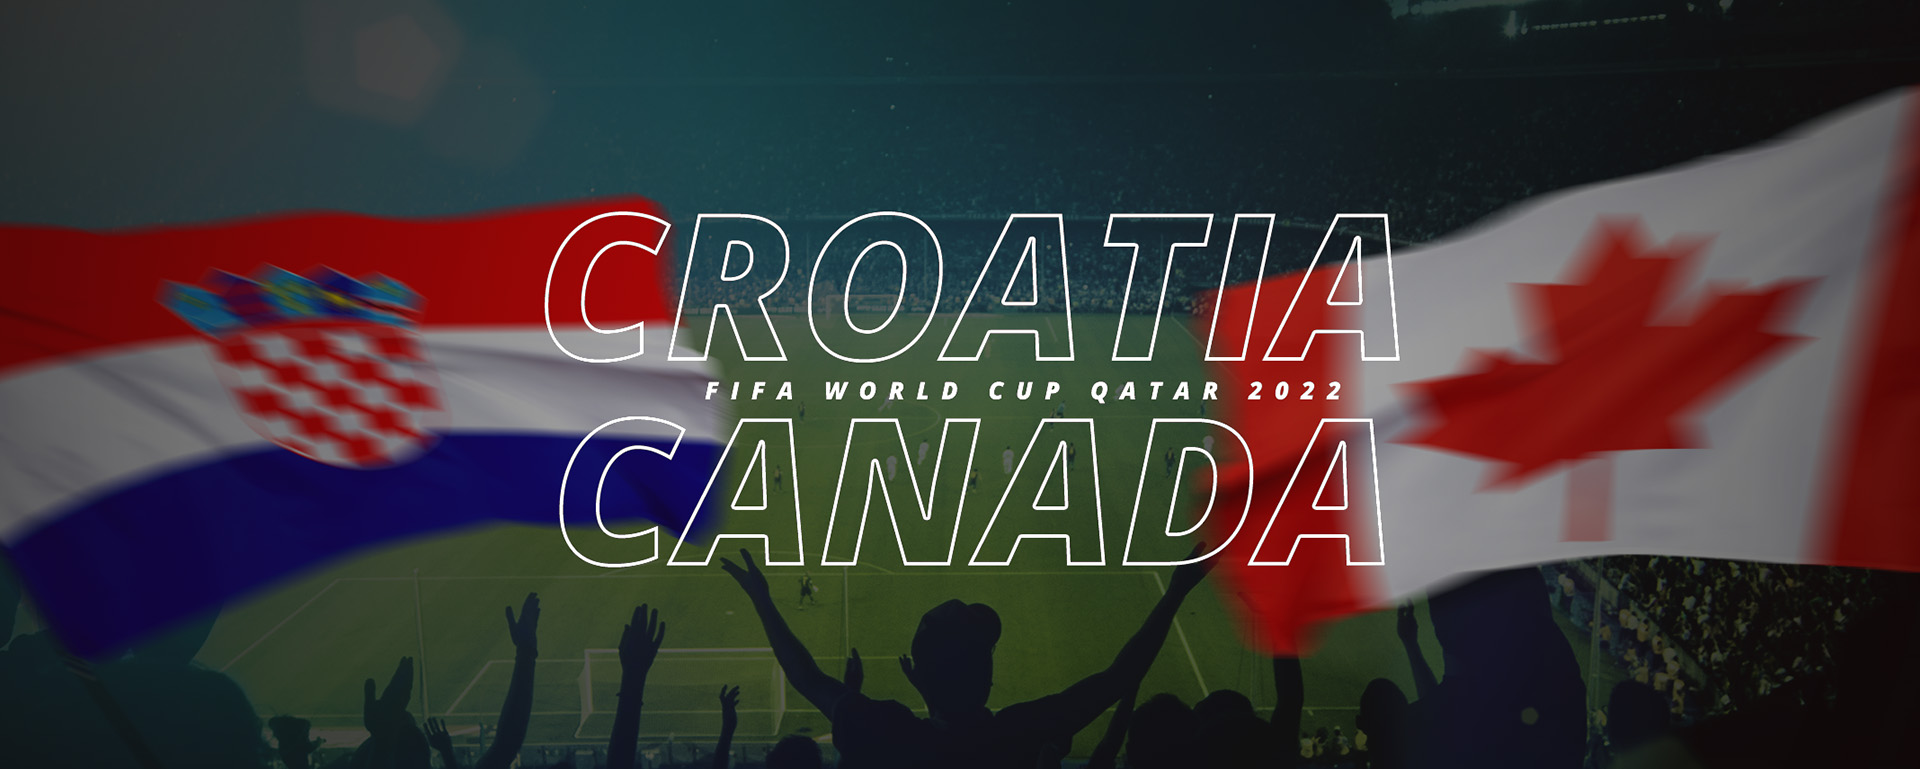 CROATIA VS CANADA | FIFA WORLD CUP QATAR 2022